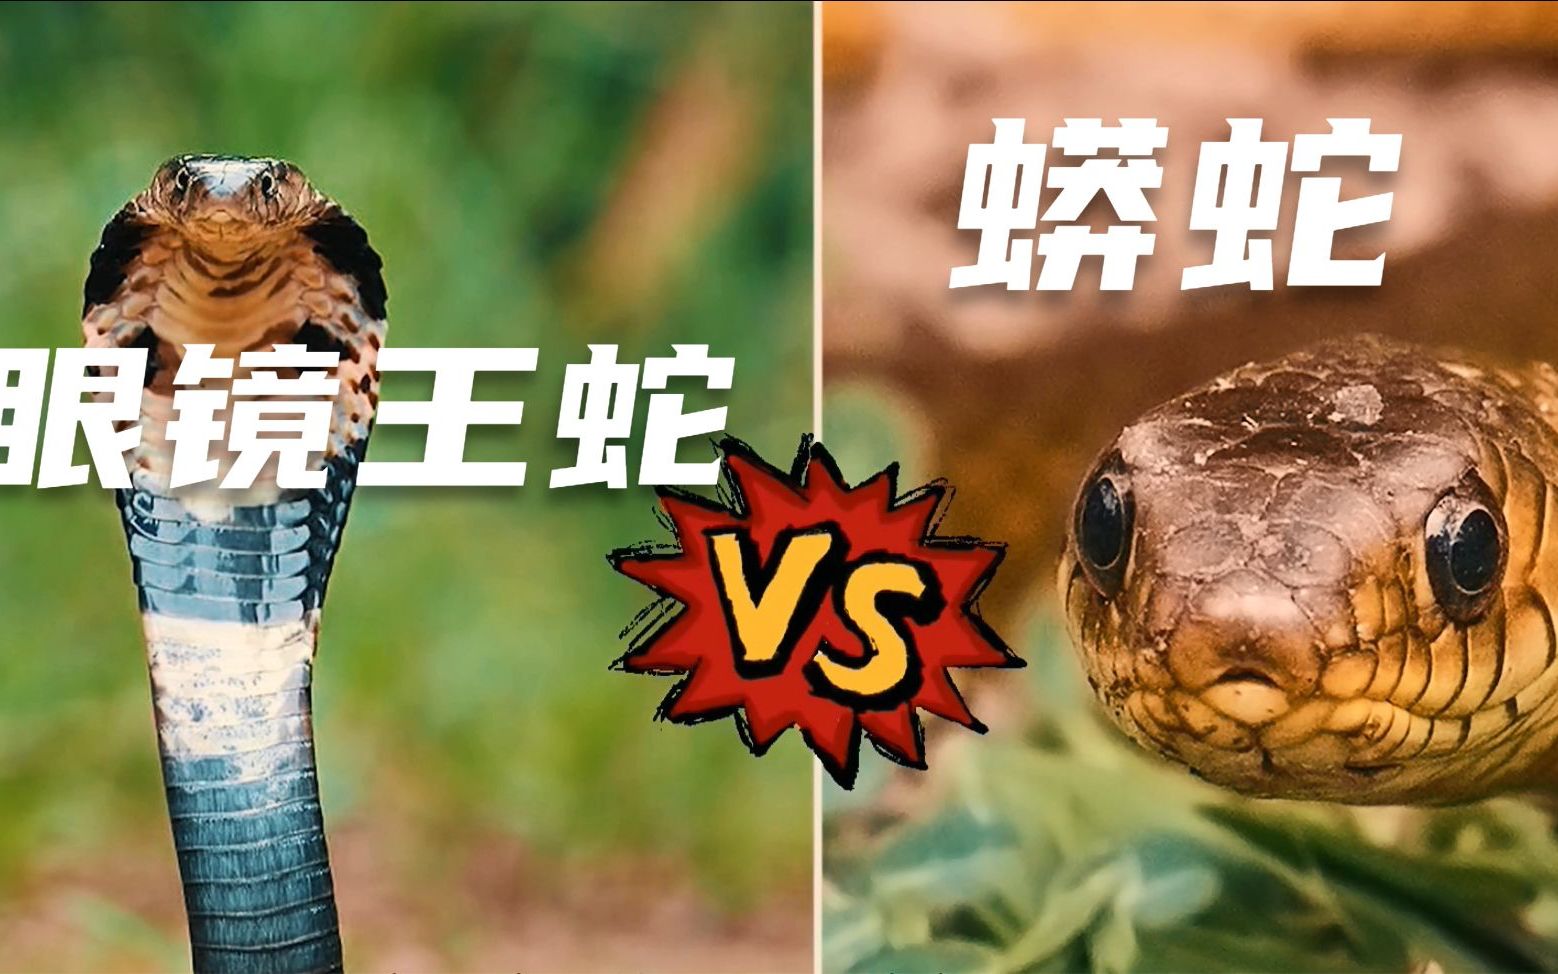 眼镜王蛇为什么要吃同类?眼镜王蛇vs蟒蛇,谁才是蛇类王者?